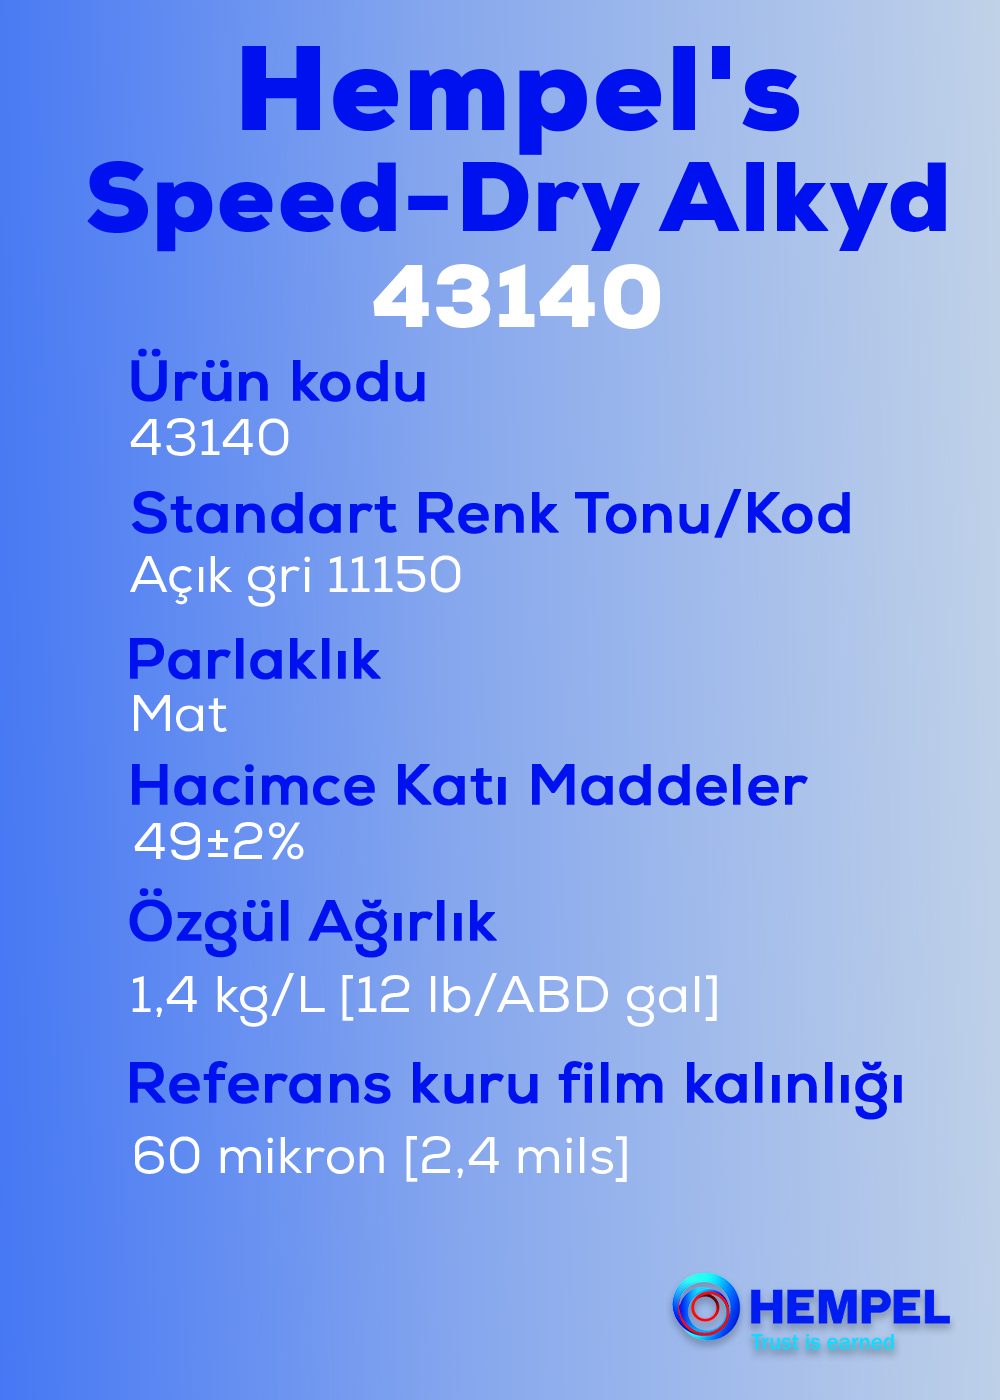 Hempel's Speed-Dry Alkyd 43140psd